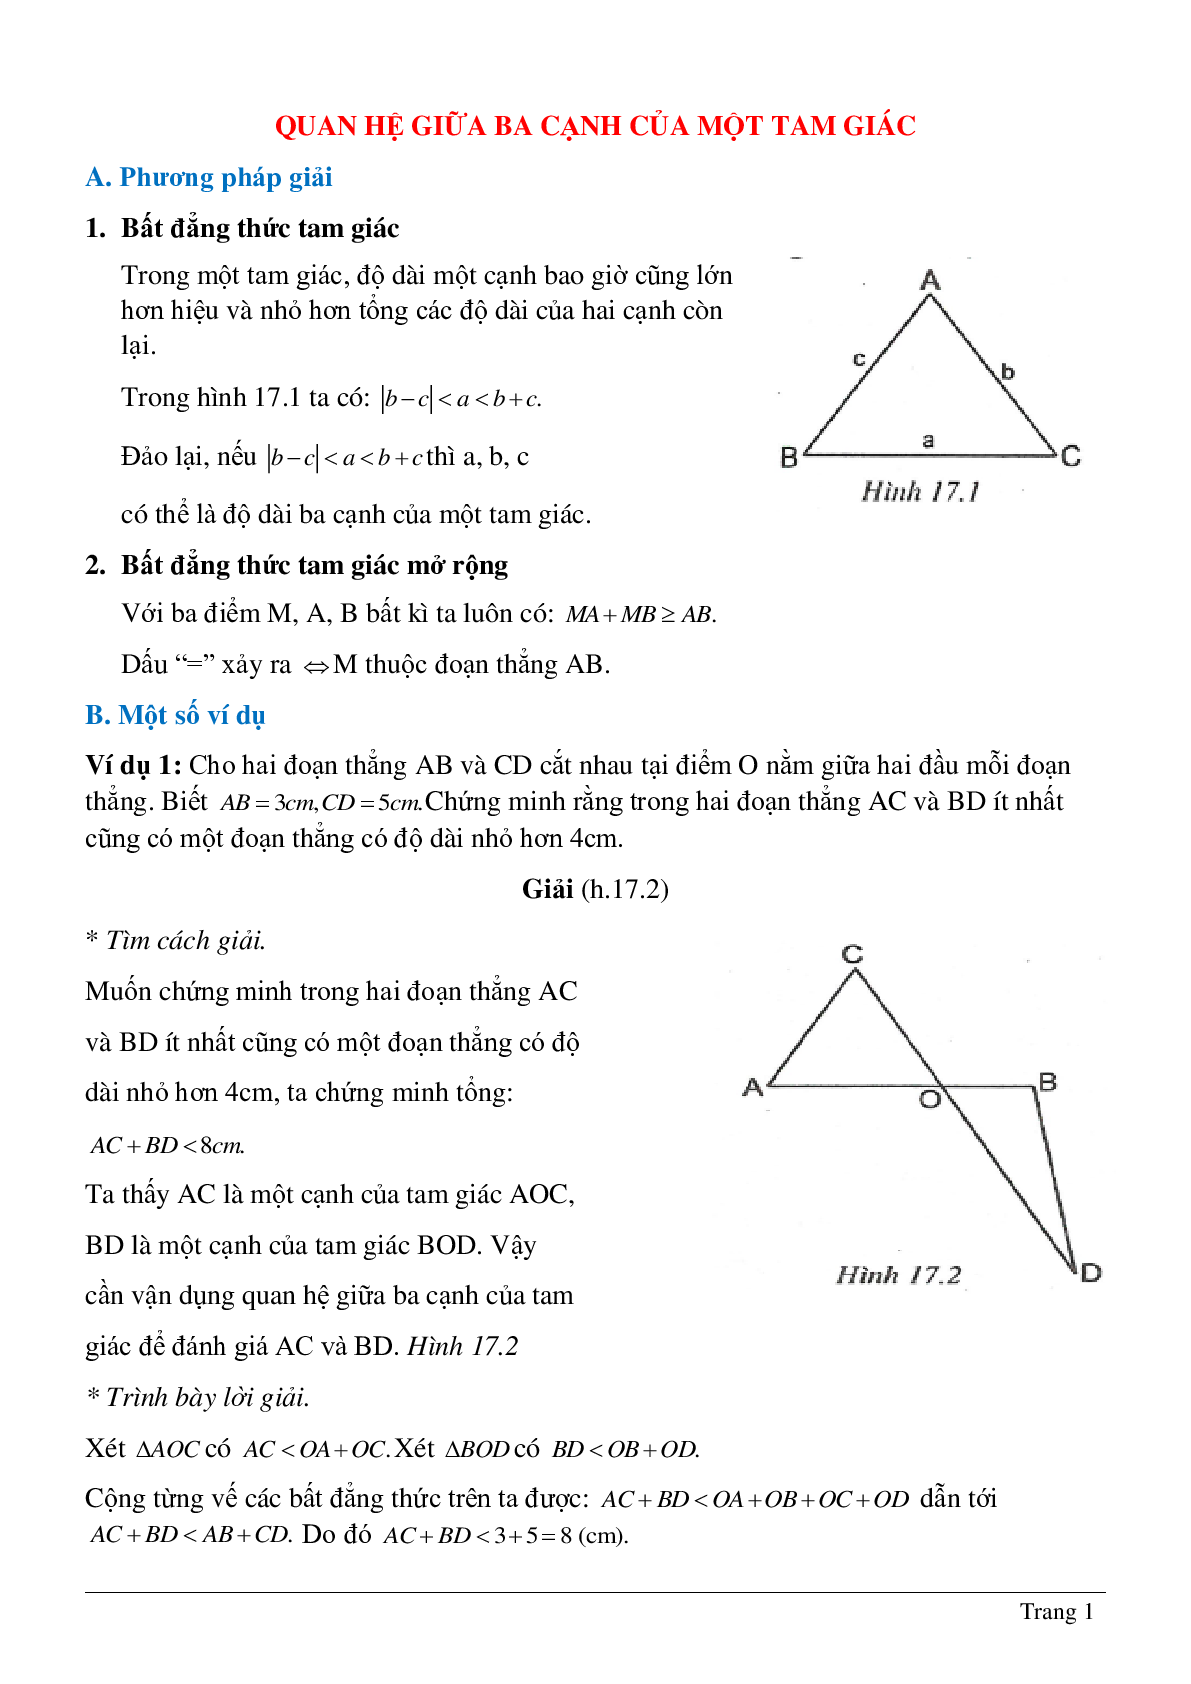 Lý thuyết và hệ thống bài tập tự luyện về Quan hệ giữa ba cạnh của một tam giác hay nhất (trang 1)